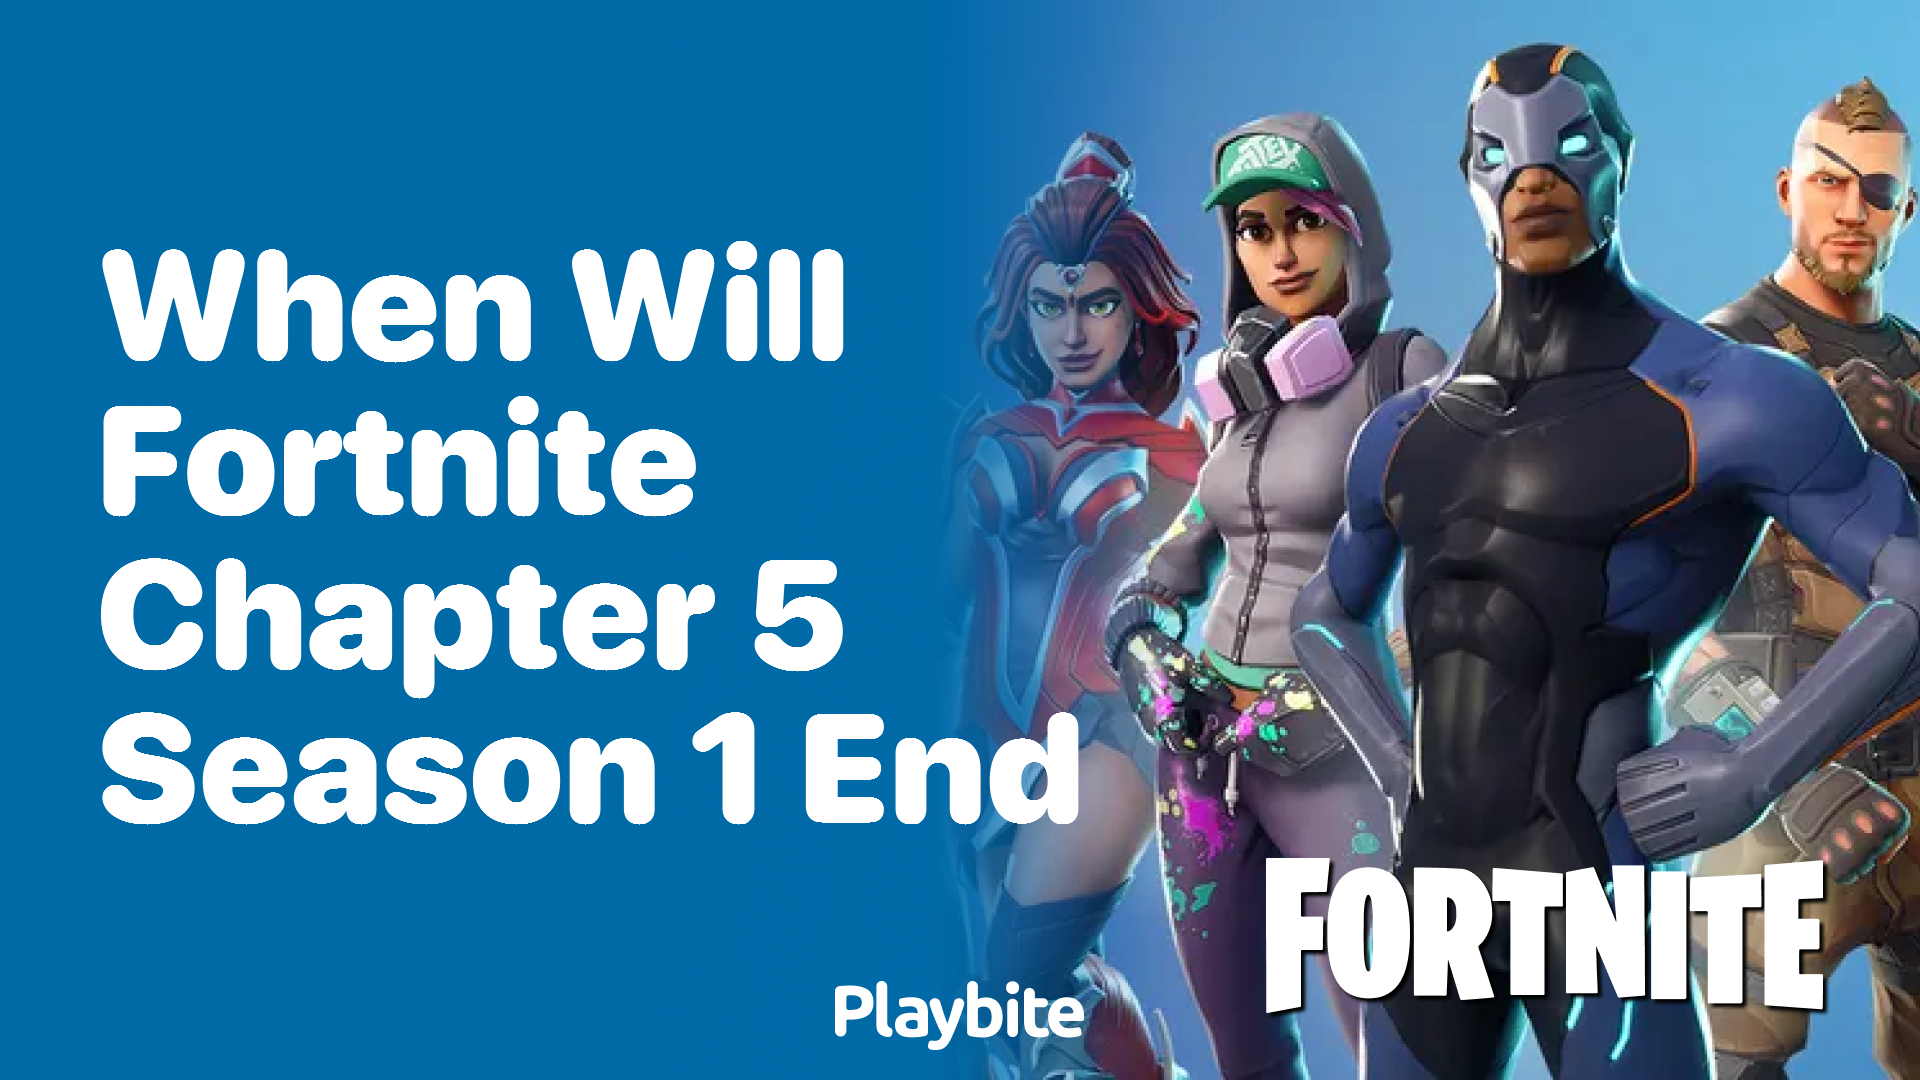 Fortnite Chapter 5 Season 1 battle pass: Fortnite Chapter 5 Season